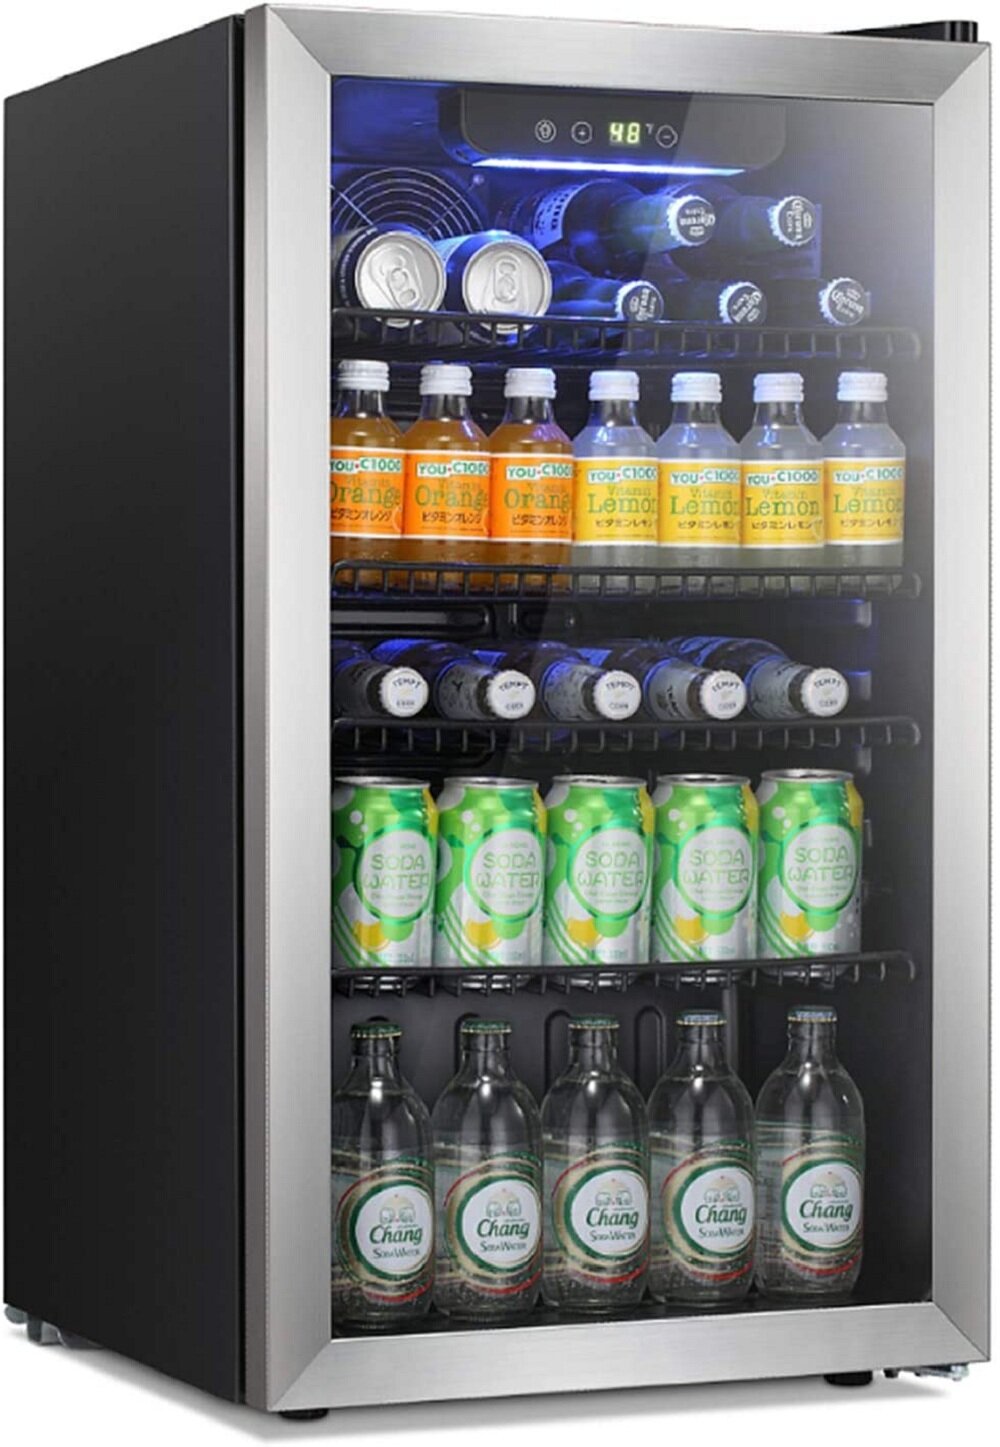 https://assets.wfcdn.com/im/07334192/compr-r85/1593/159347353/yukool-32cuft-single-zone-built-in-beverage-refrigerator.jpg